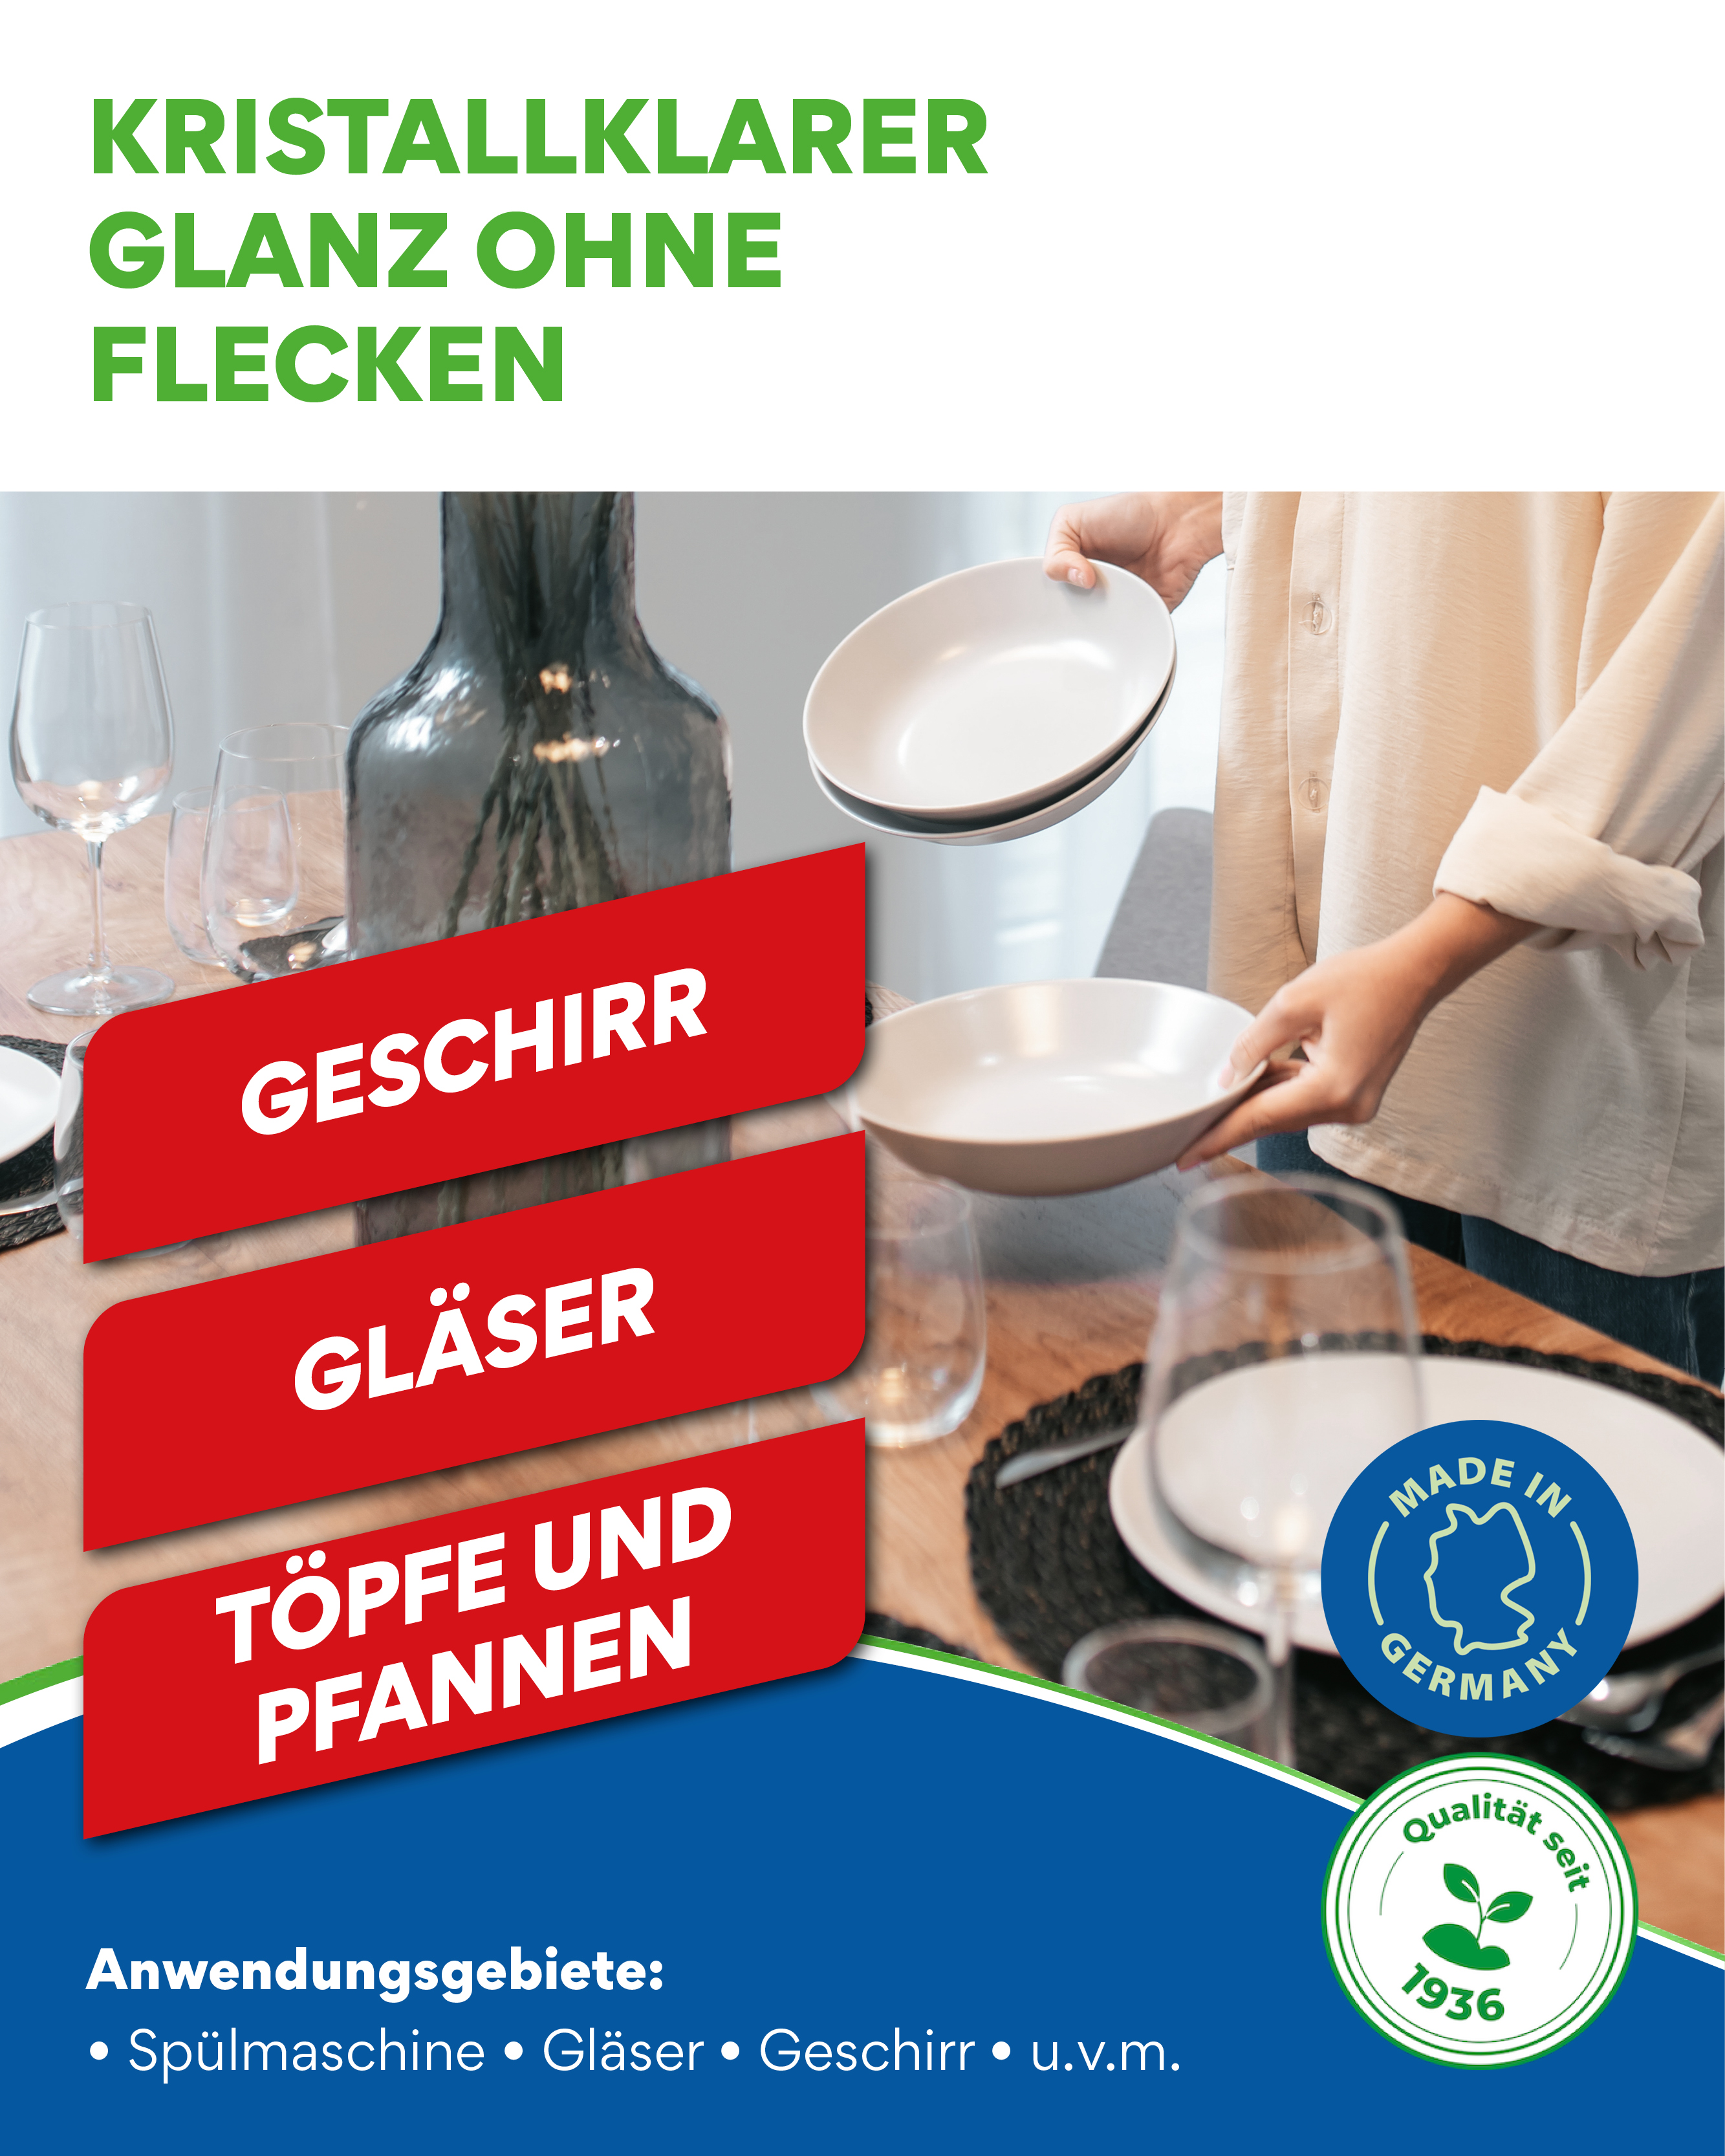 Das COLLO Klarspülmittel (Artikelnummer 0084) gewährleistet streifenfreies Trocknen für Besteck, Gläser und Geschirr.